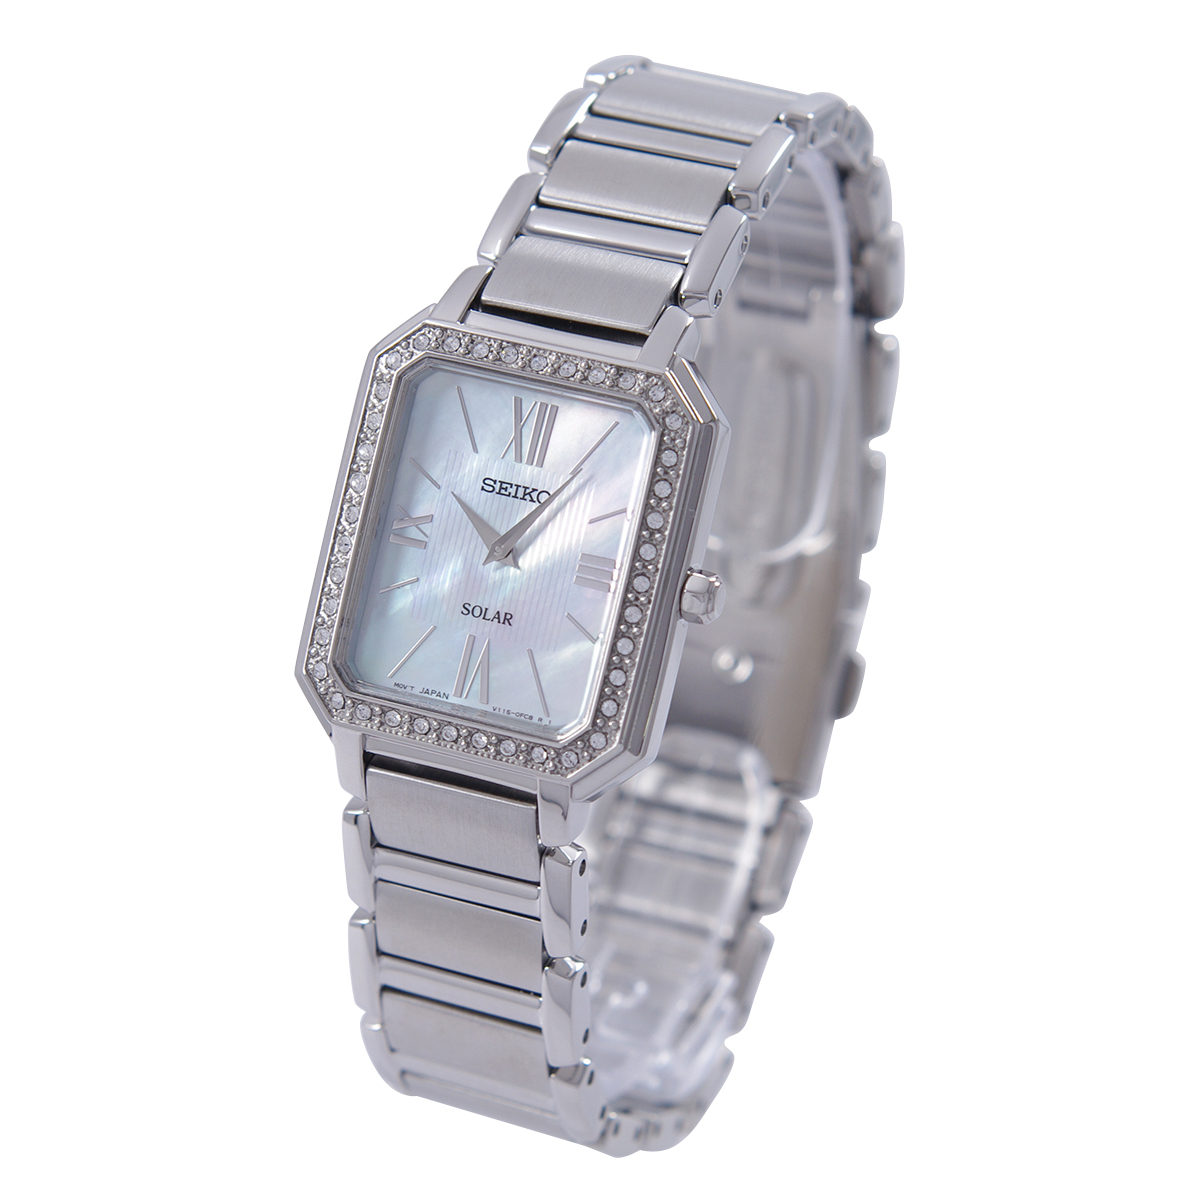 安い Seiko セイコー 腕時計 並行輸入品 レディース Sup427p1 海外モデル ソーラー レディース腕時計